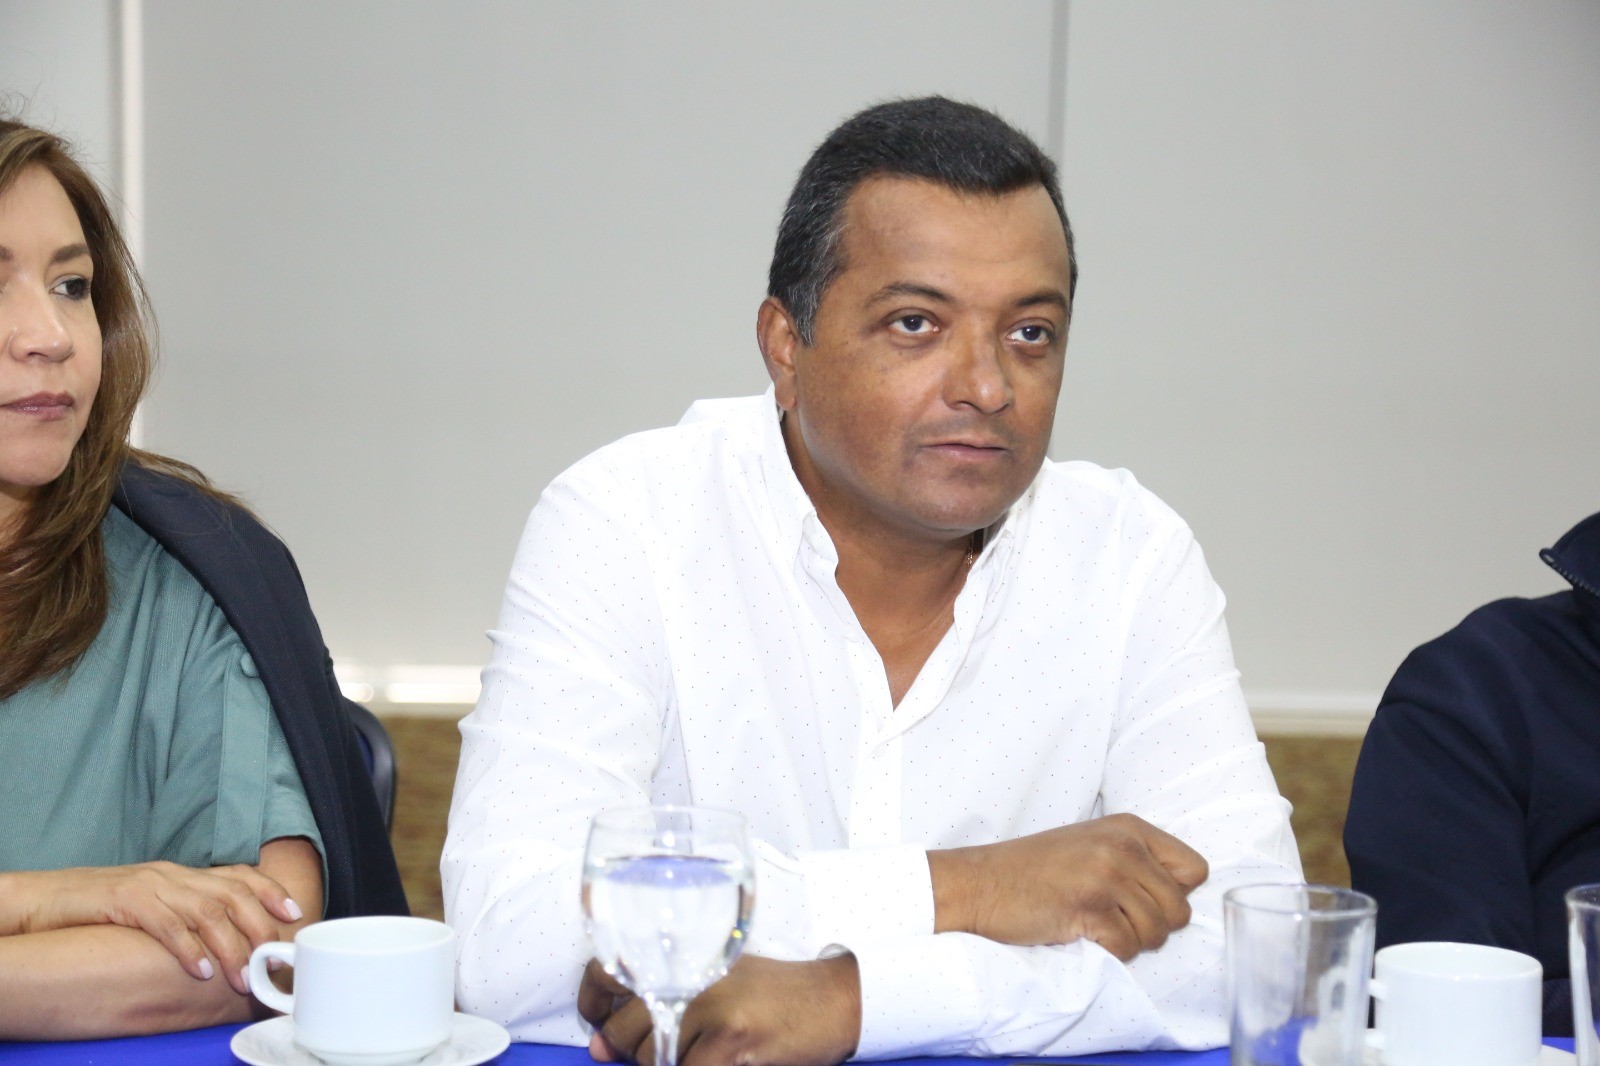 El Gobierno Petro no tiene como prioridad la reforma laboral: Salcedo